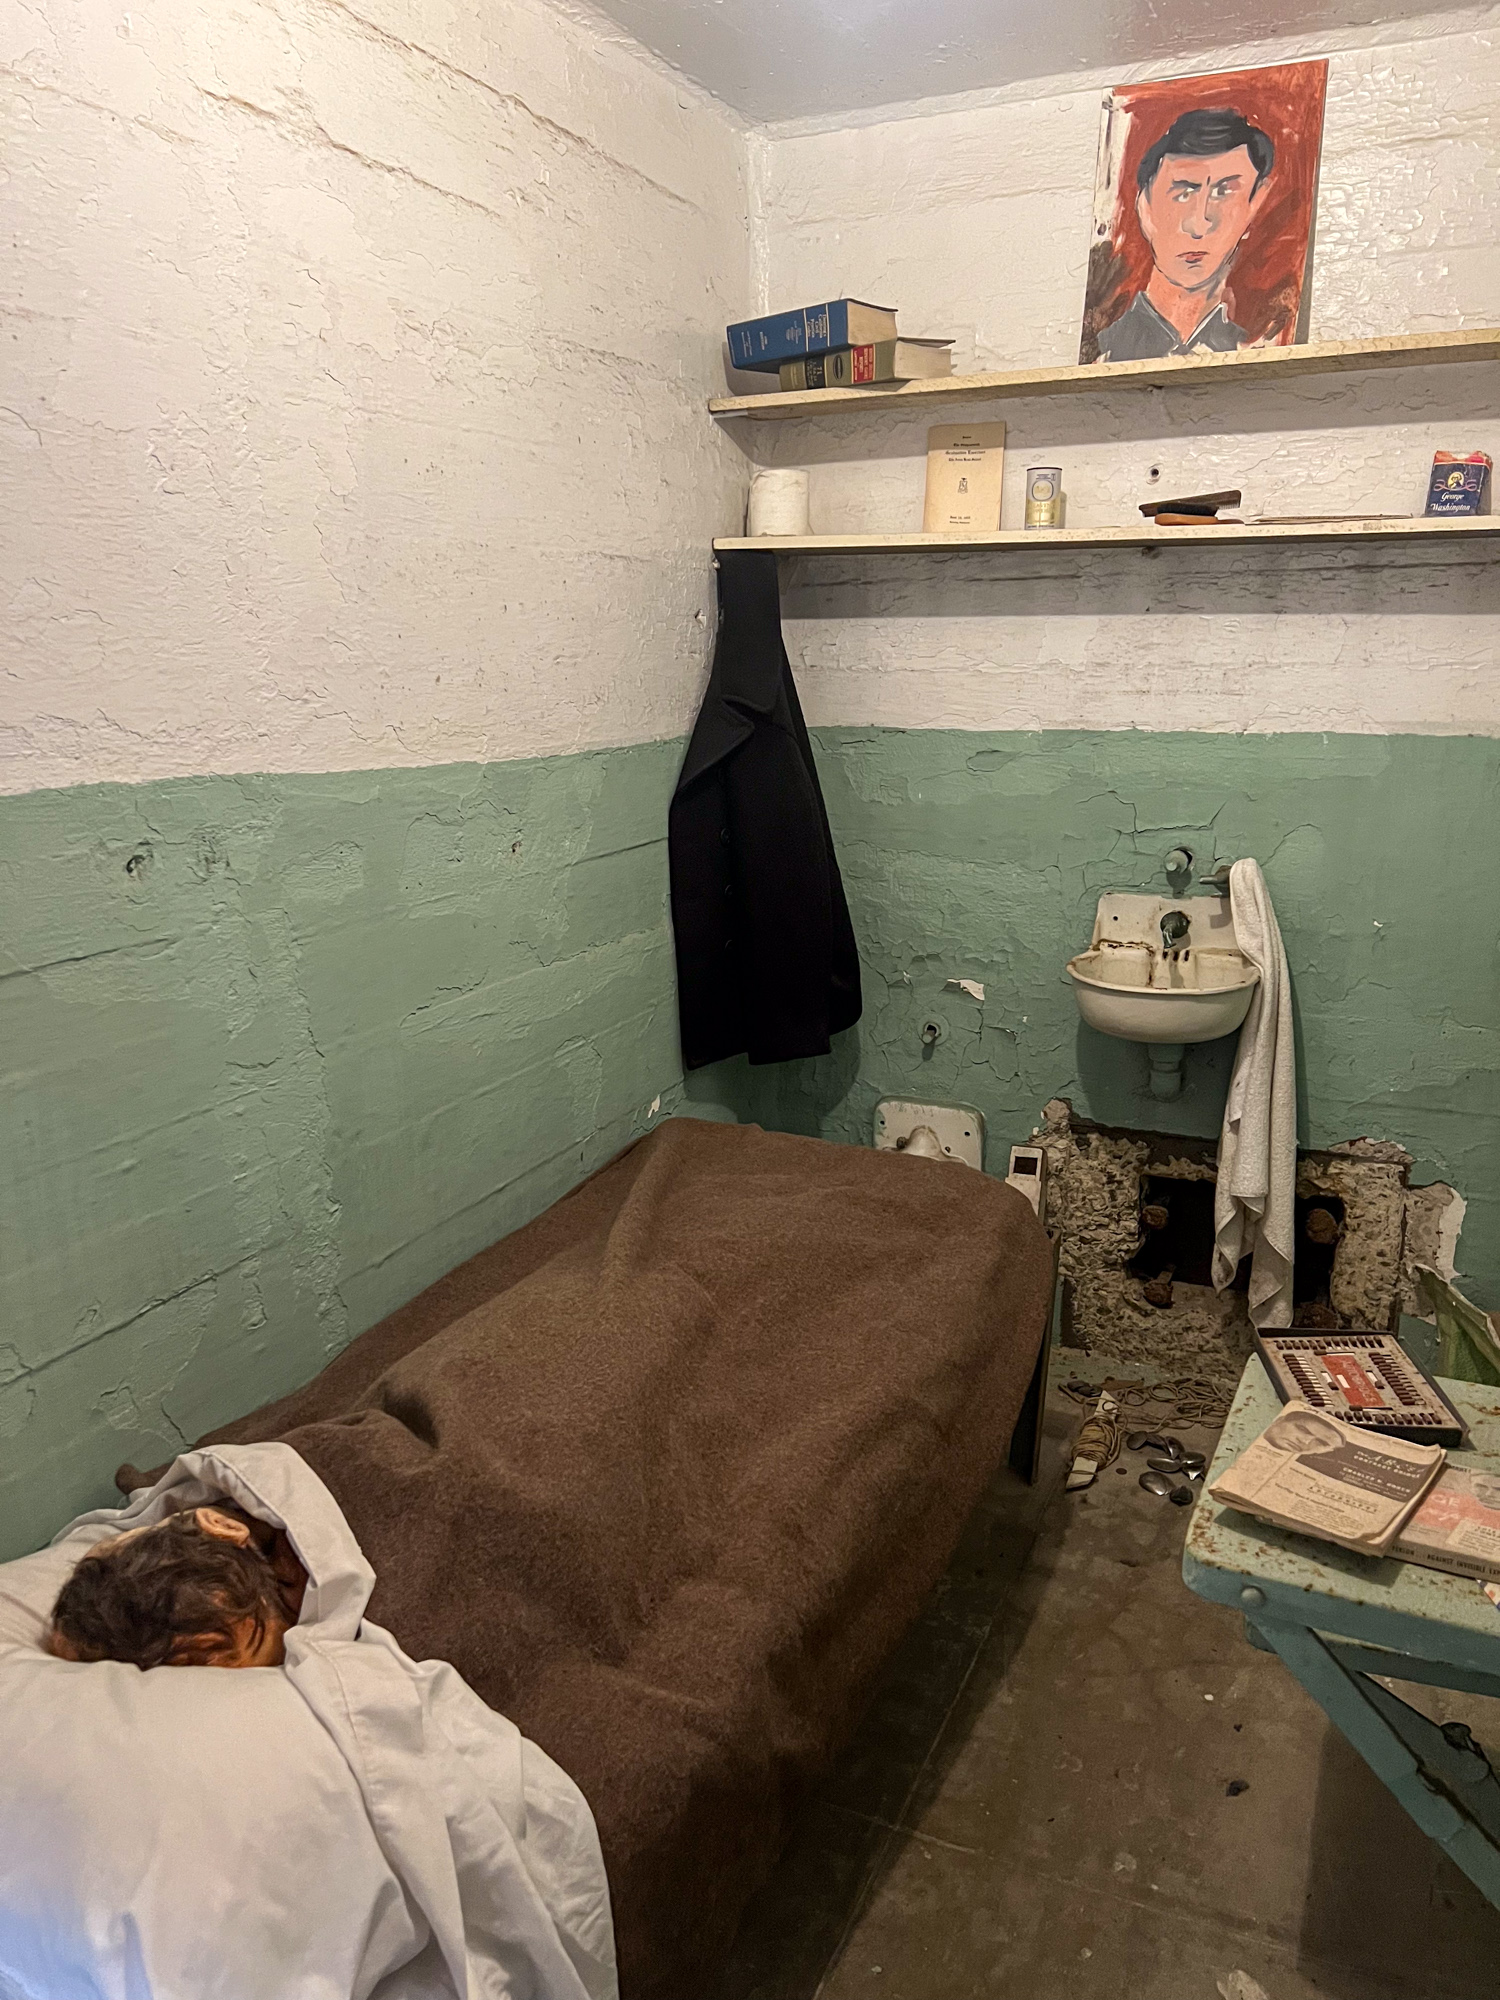 Prison cell at Alcatraz